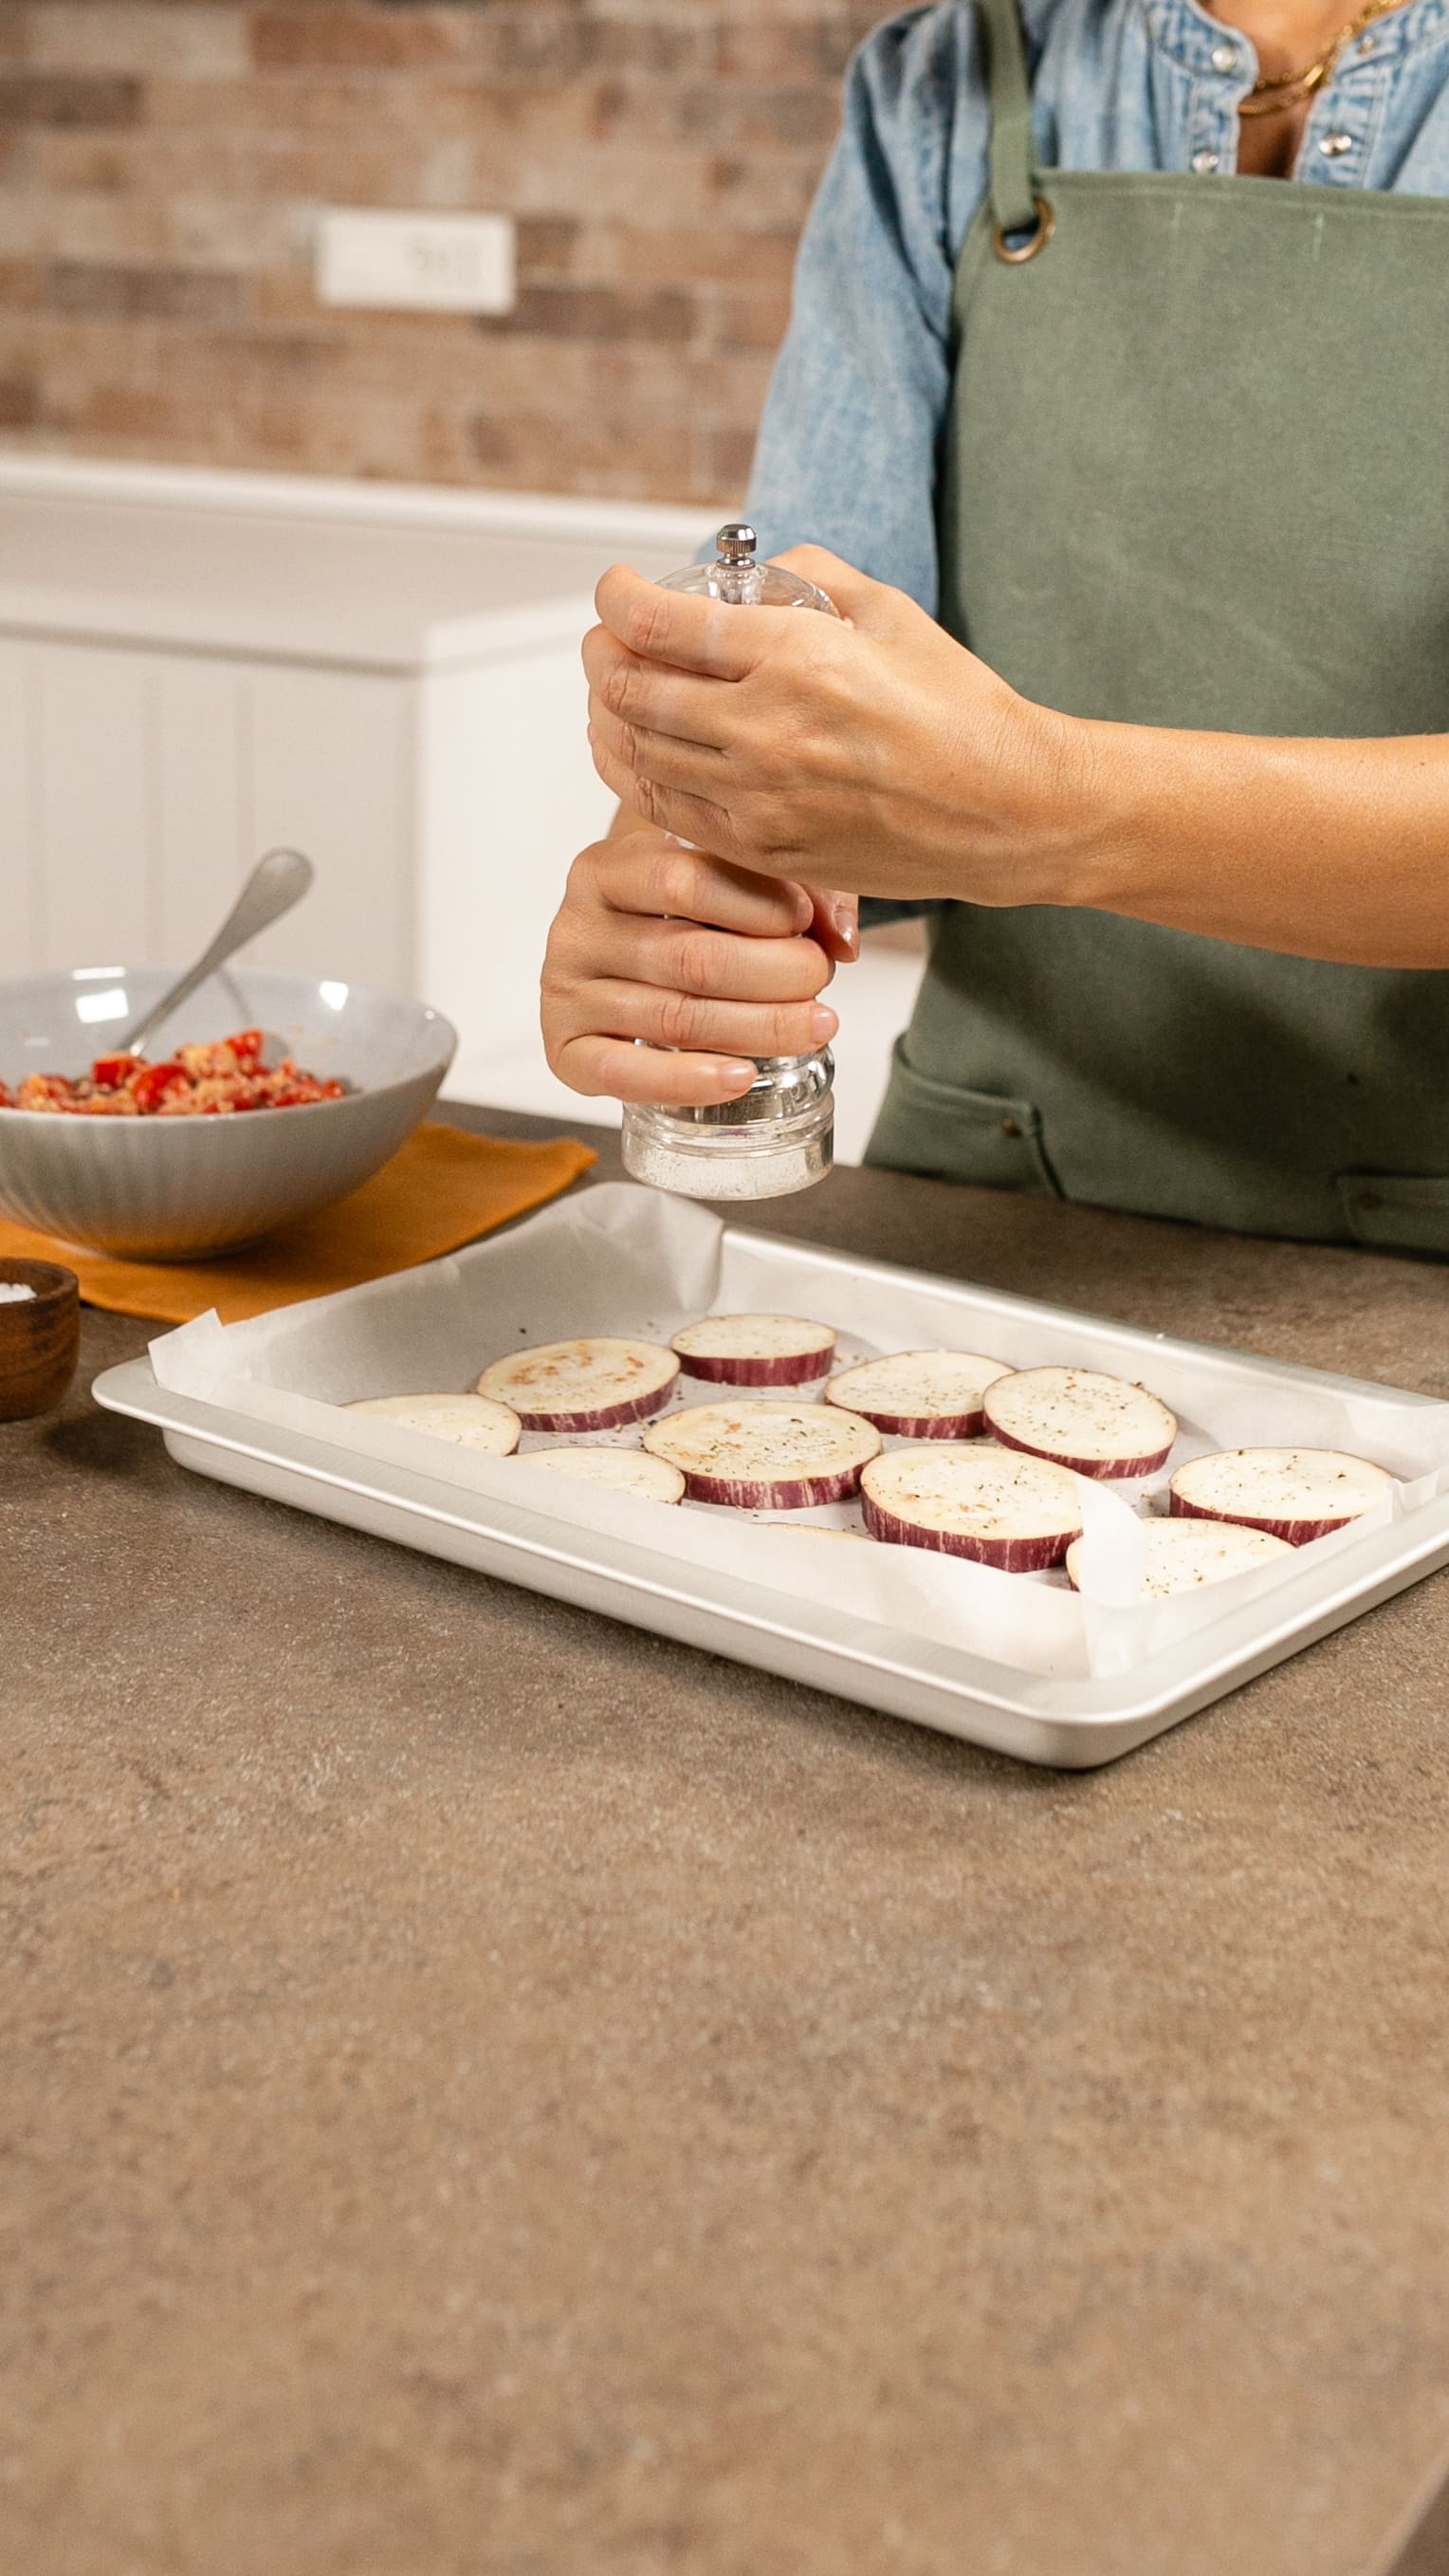 Disponi le fette una accanto all’altra su una teglia foderata con carta forno e condisci con sale e pepe.